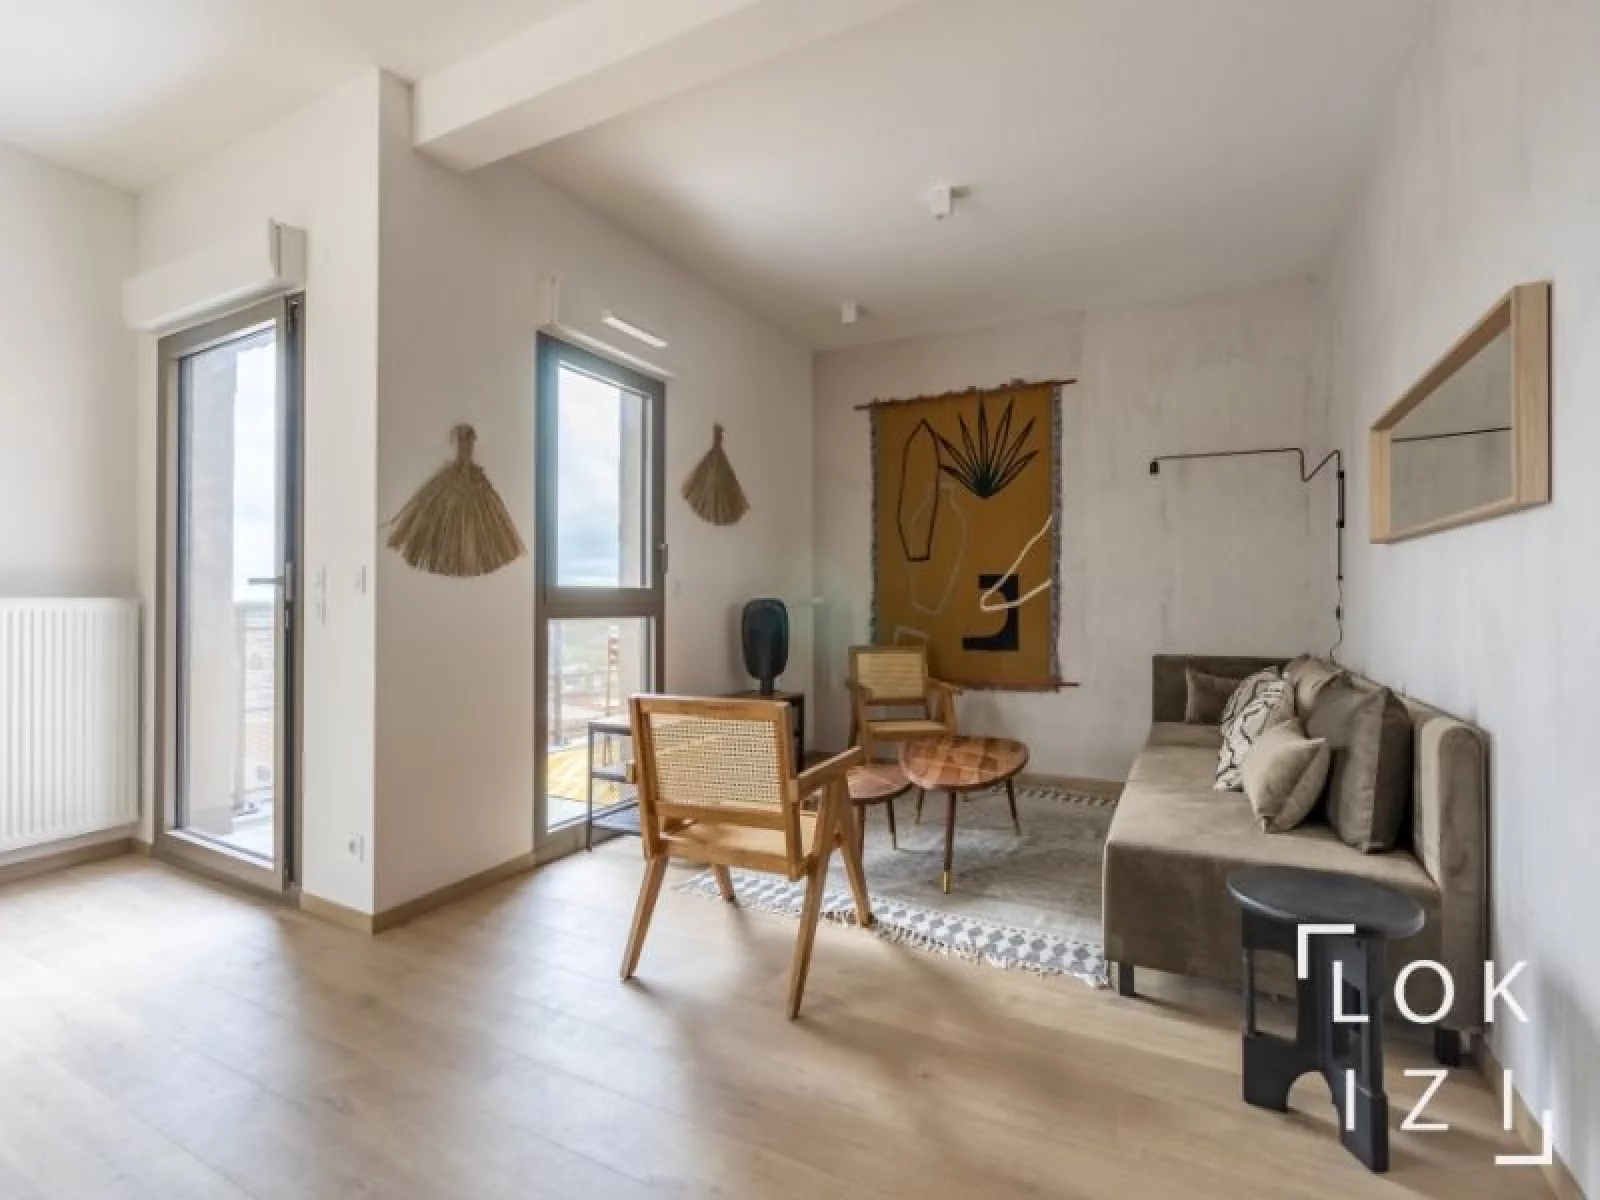 Location appartement meublé 4 pièces 94m² (Bordeaux - Belcier)